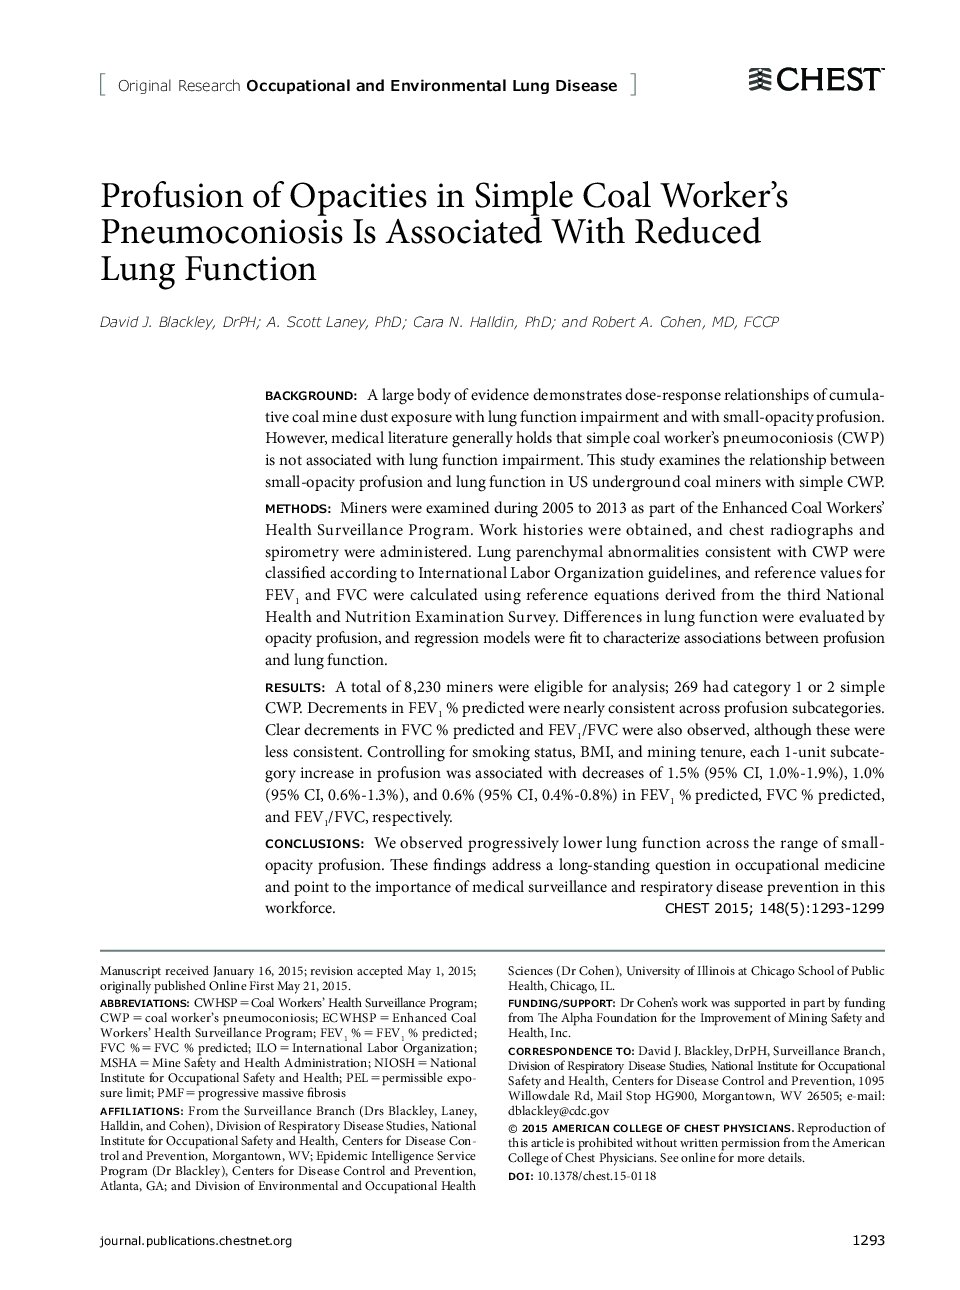 نفوذ ناپذیری در پنوموکونیزوز کارگر زغال سنگ ساده همراه با کاهش عملکرد ریه 